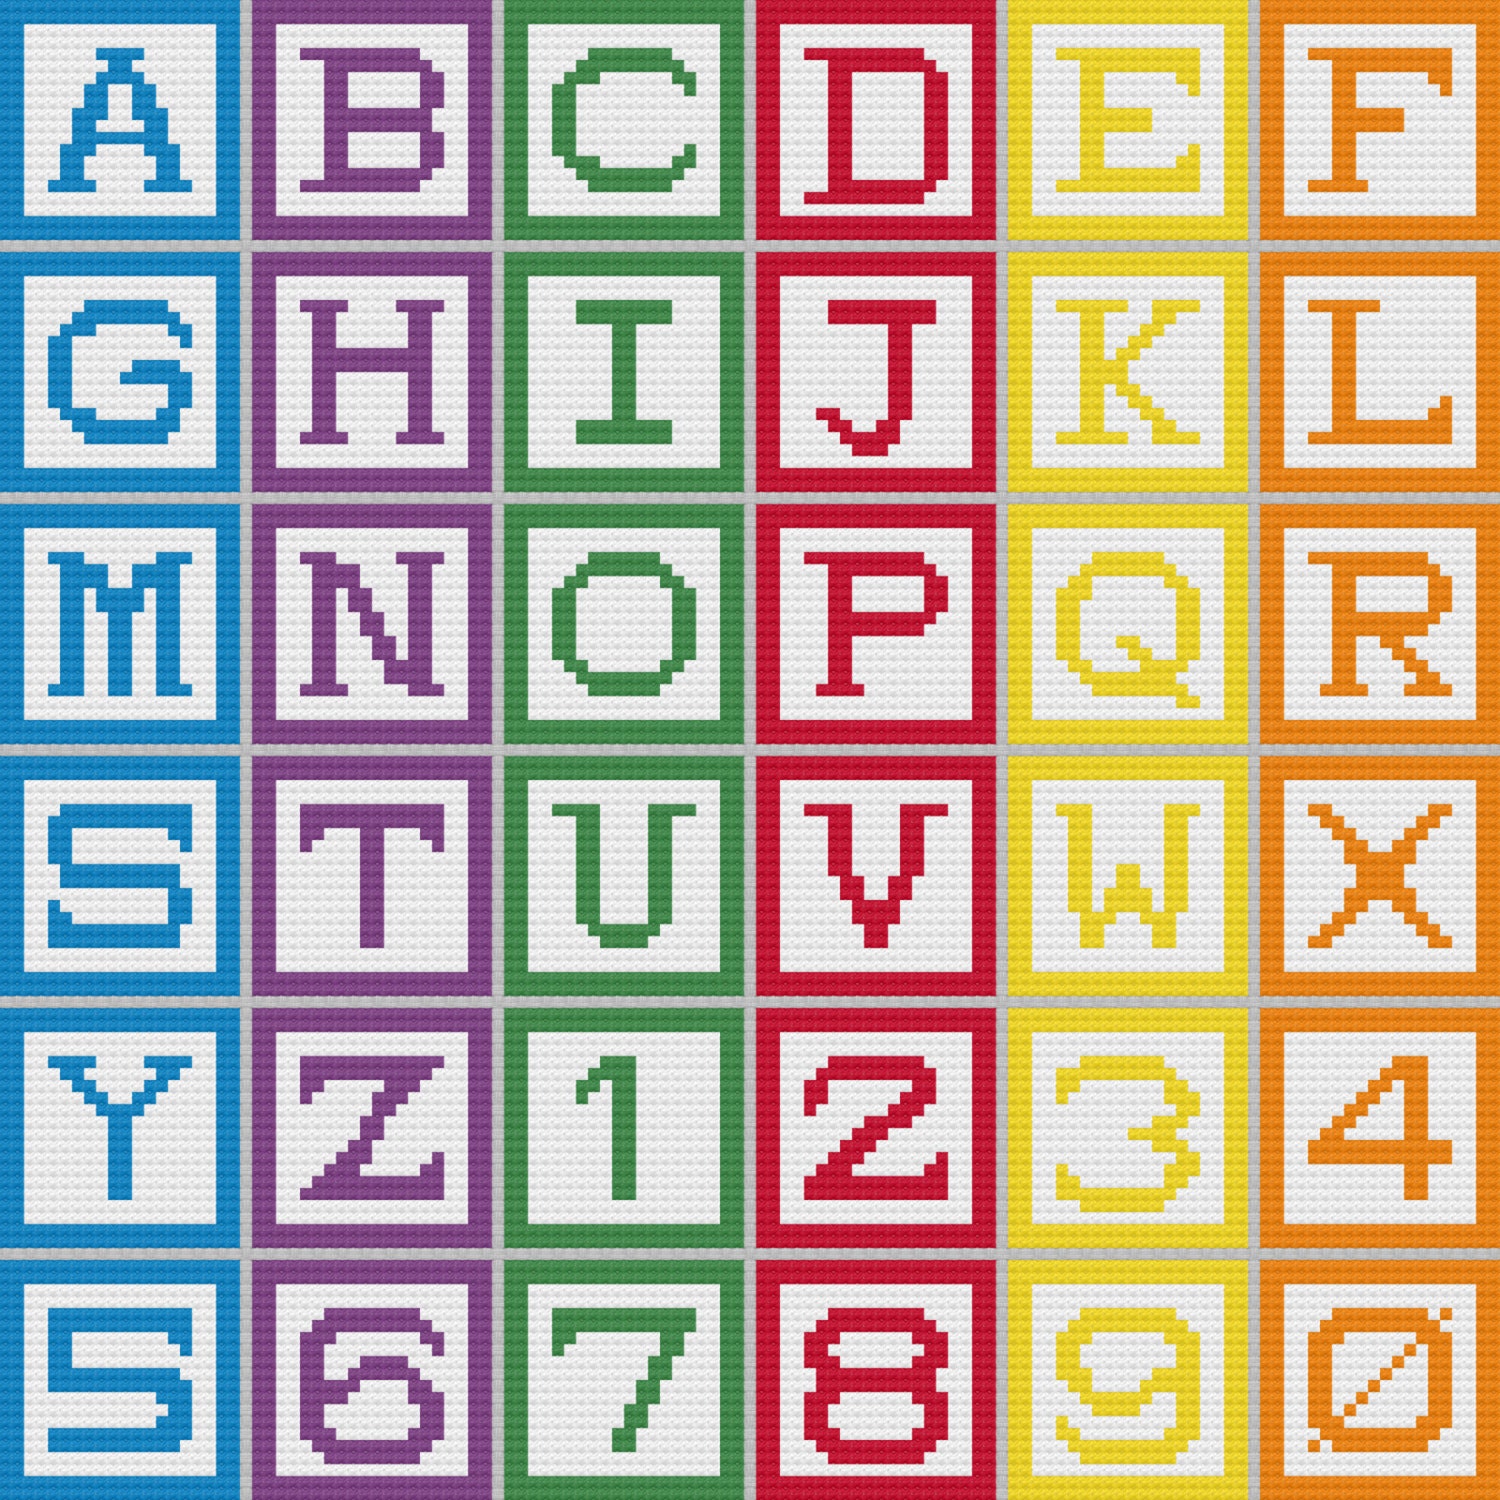 easy-cross-stitch-pattern-alphabet-blocks-etsy-australia